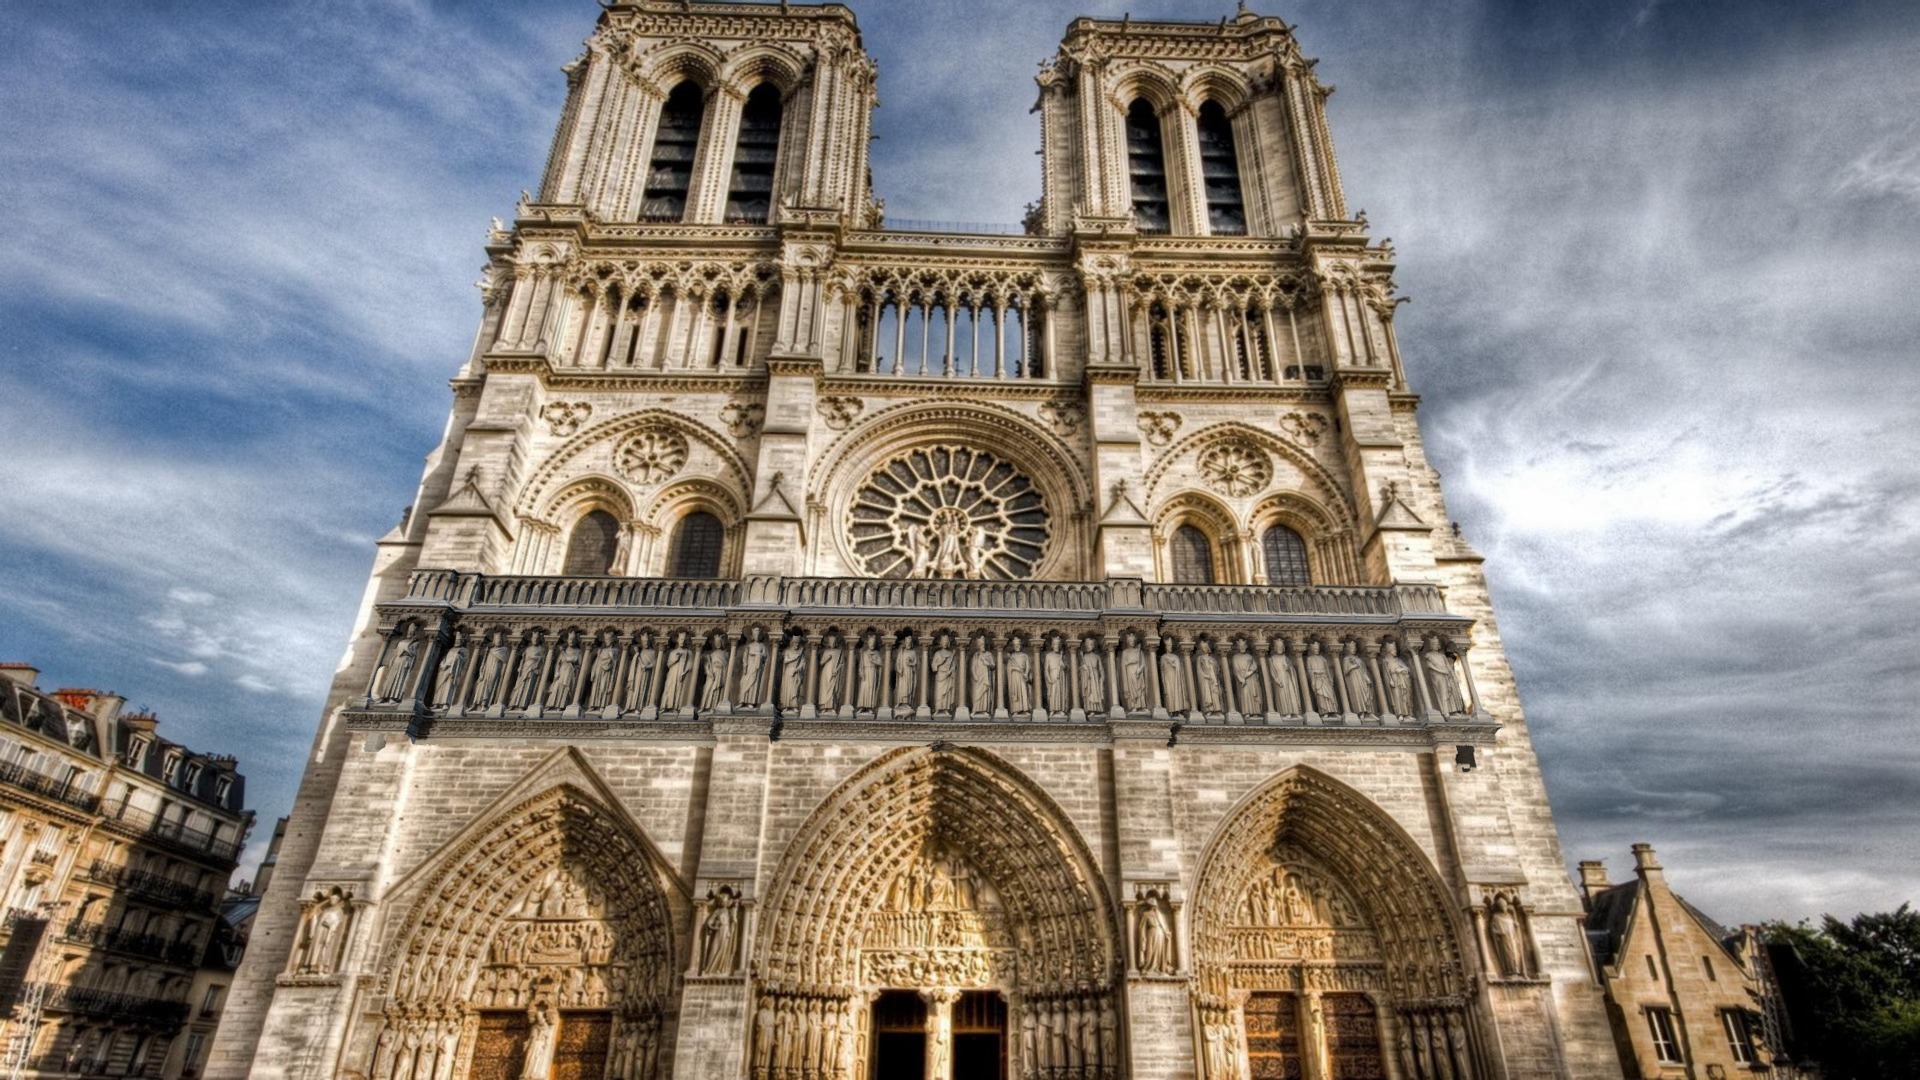 3D model STATUES NOTRE DAME DE PARIS – GALLERY OF KINGS - This is a 3D model of the STATUES NOTRE DAME DE PARIS - GALLERY OF KINGS. The 3D model is about a large stone building with Notre Dame de Paris in the background.